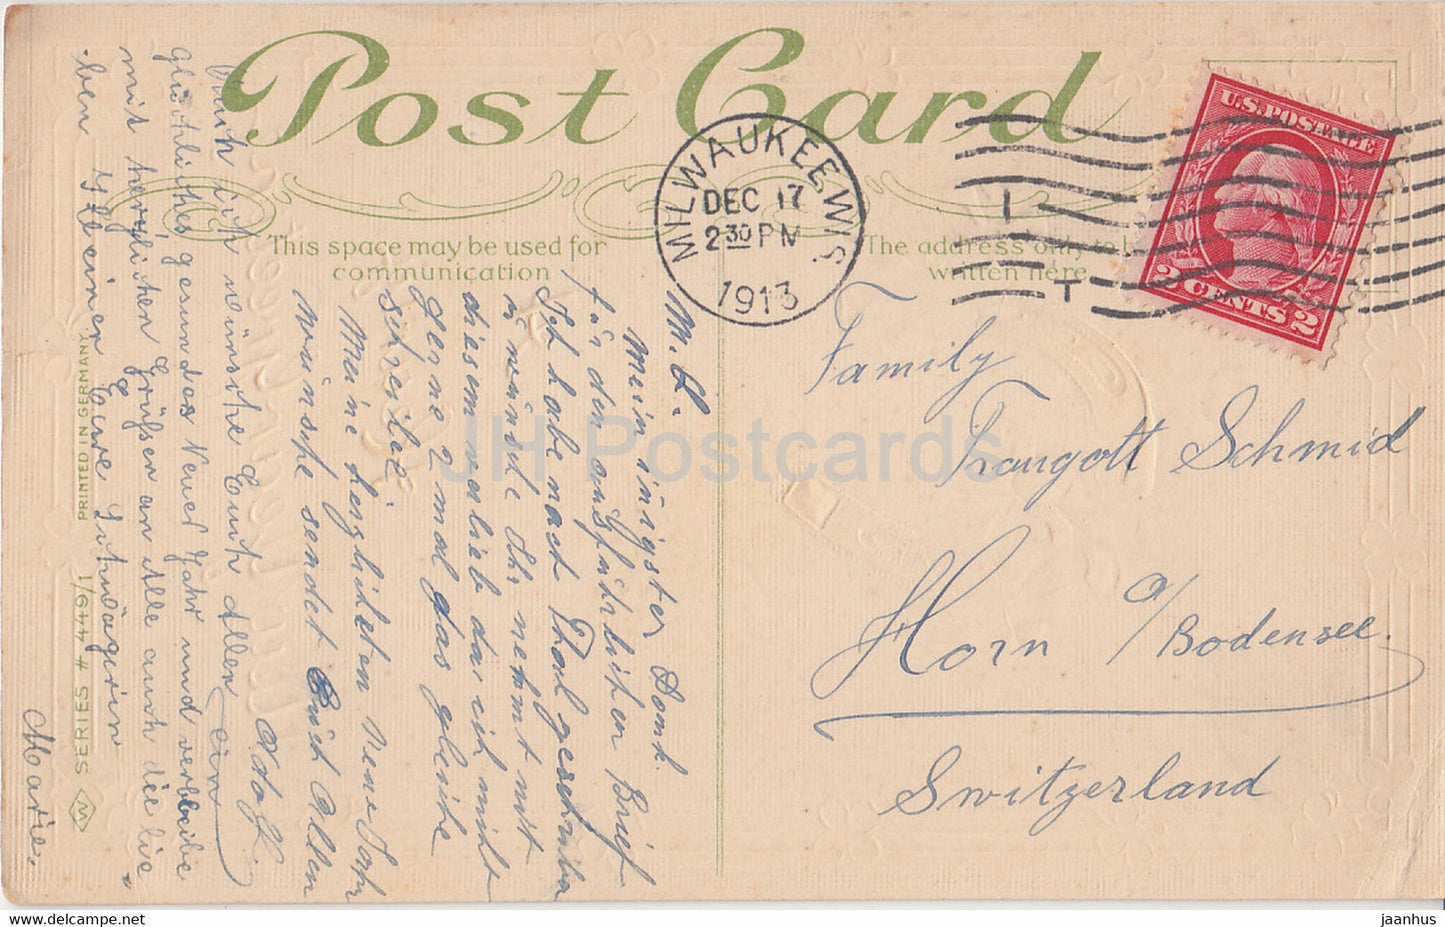 Neujahrsgrußkarte – Ein herzlicher Neujahrsgruß – Marienkäfer – Serie 449/1 – alte Postkarte – 1913 – USA – gebraucht